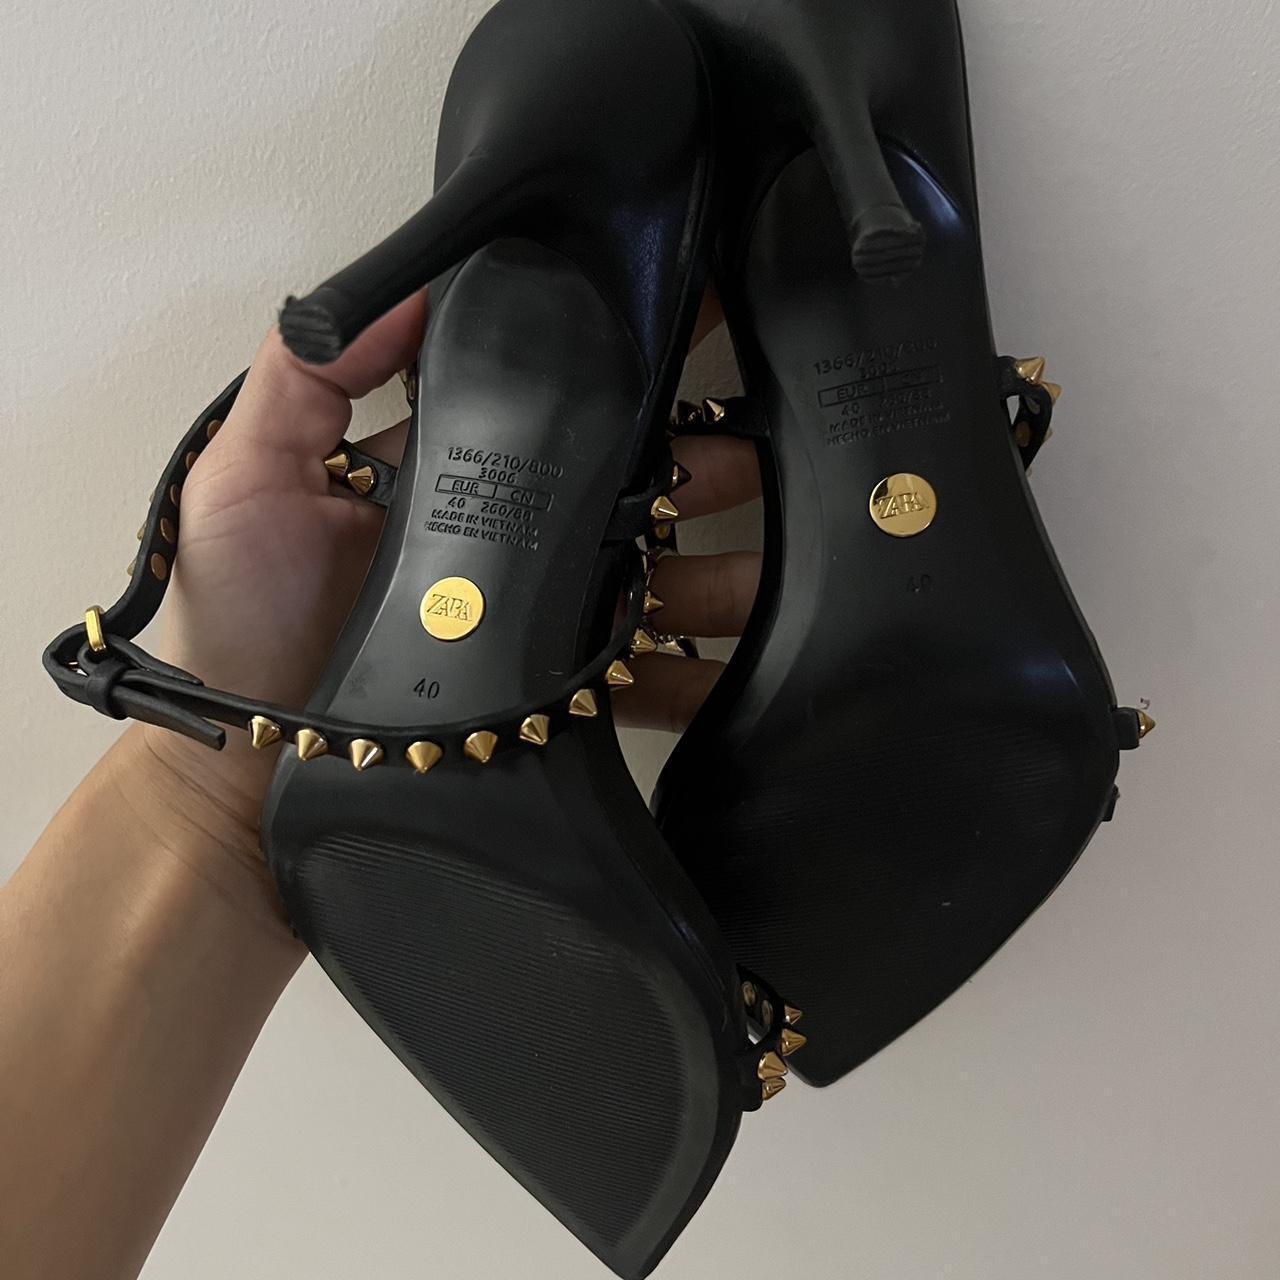 Zara high heels with gold spikes Good... - Depop